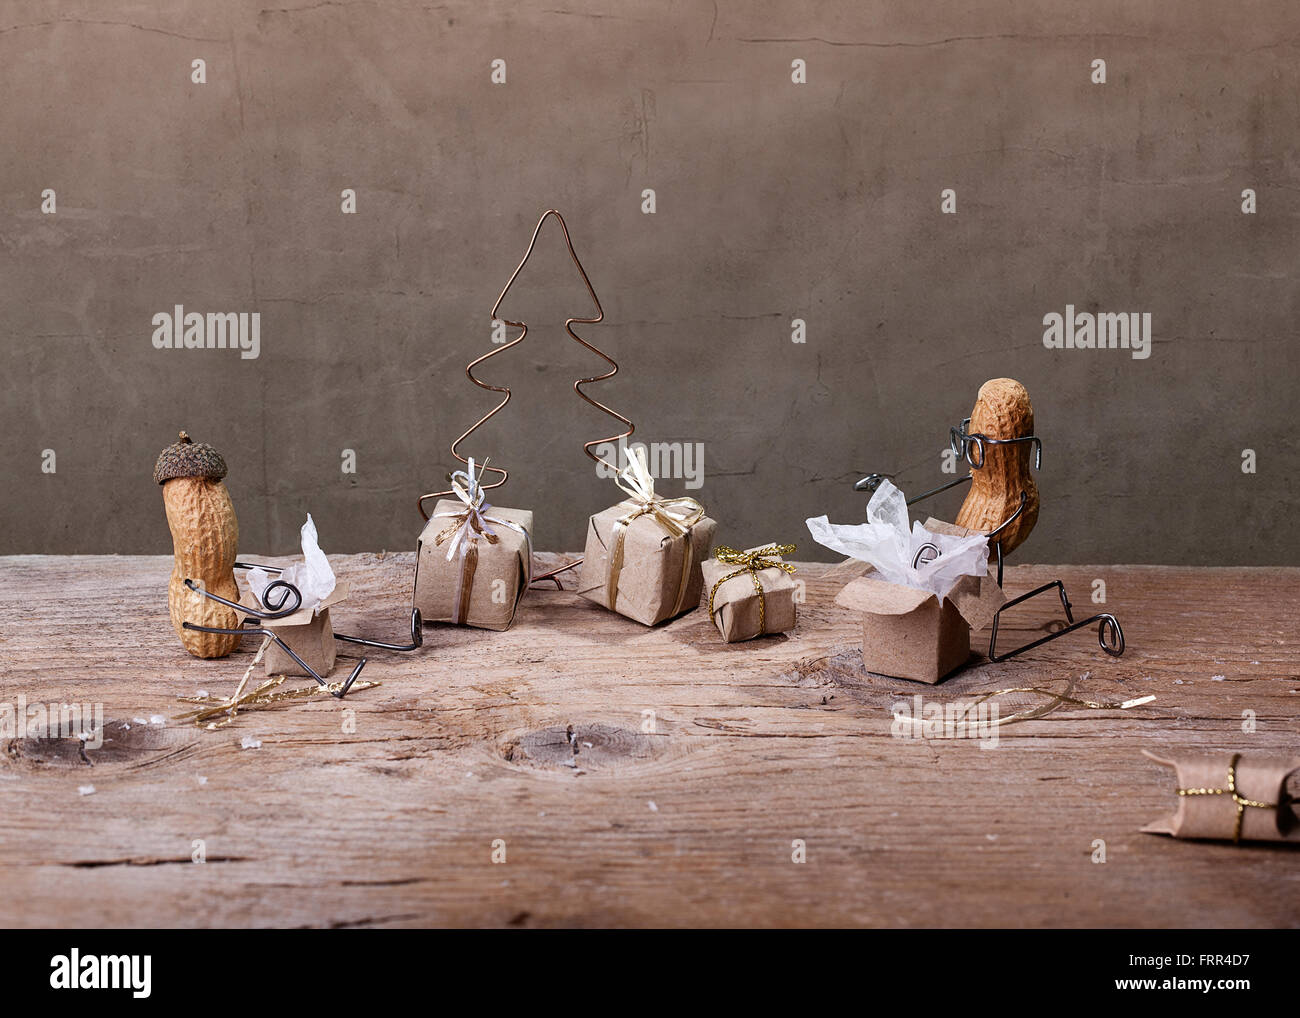 Des choses simples - Miniature avec les gens d'arachide sur le déballage de Noël leur présente Banque D'Images